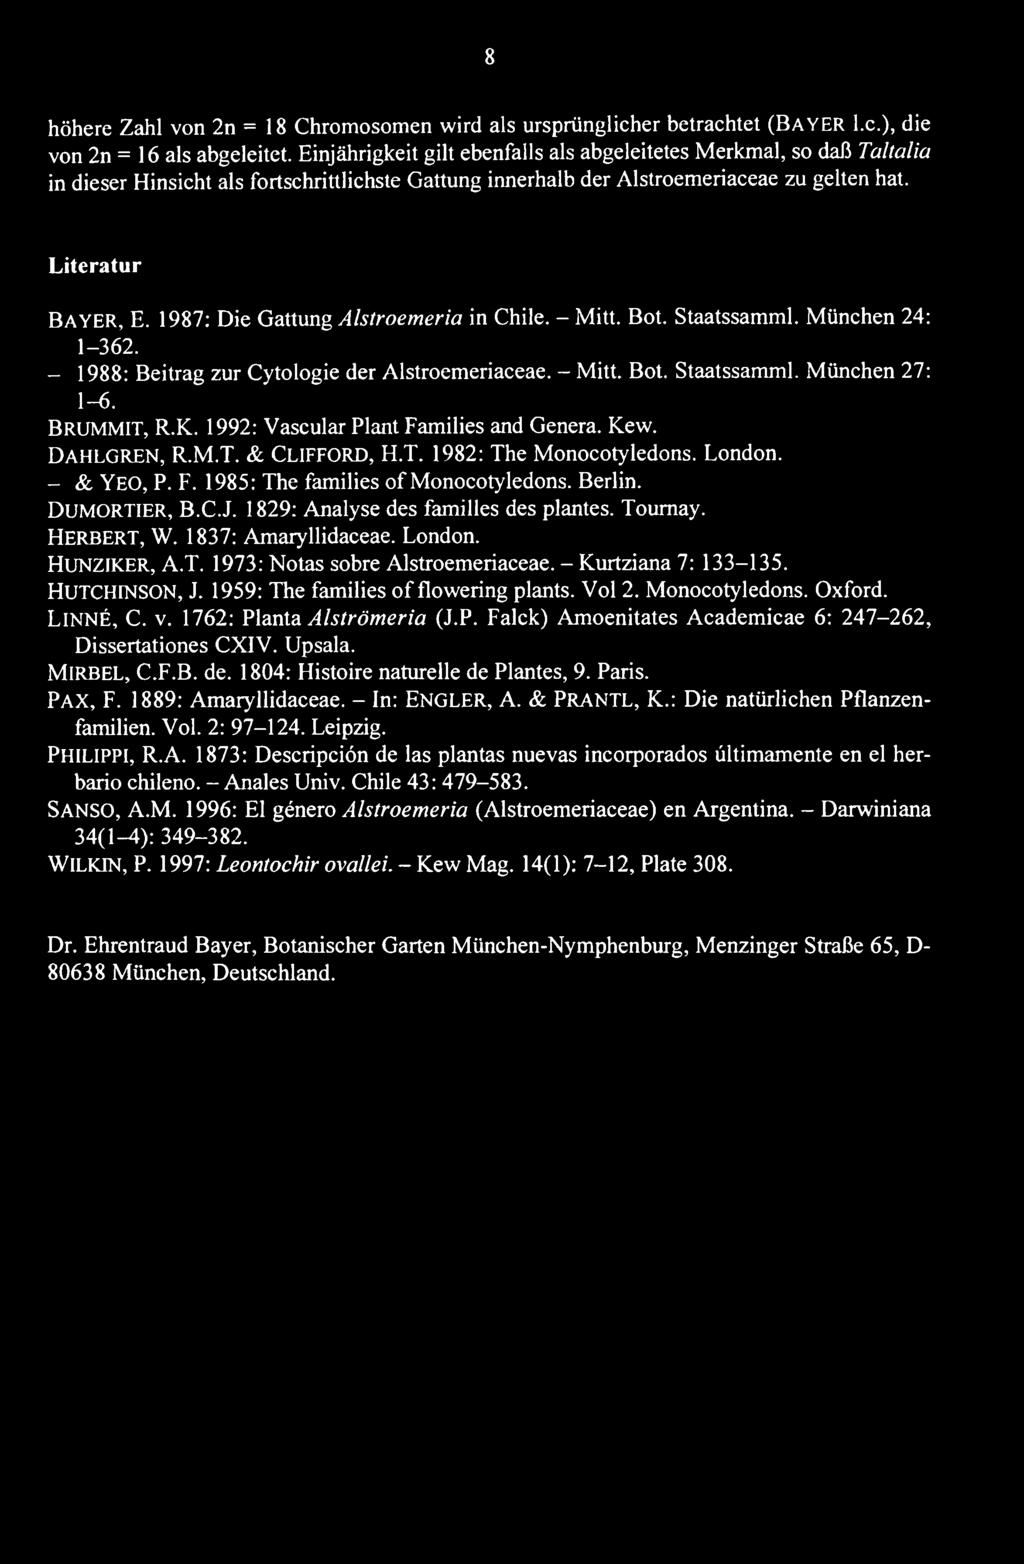 1987: Die Gattung Alstroemeria in Chile. - Mitt. Bot. Staatssamml. München 24: 1-362. - 1988: Beitrag zur Cytologie der Alstroemeriaceae. - Mitt. Bot. Staatssamml. München 27: 1-6. BRUMMIT, R.K.